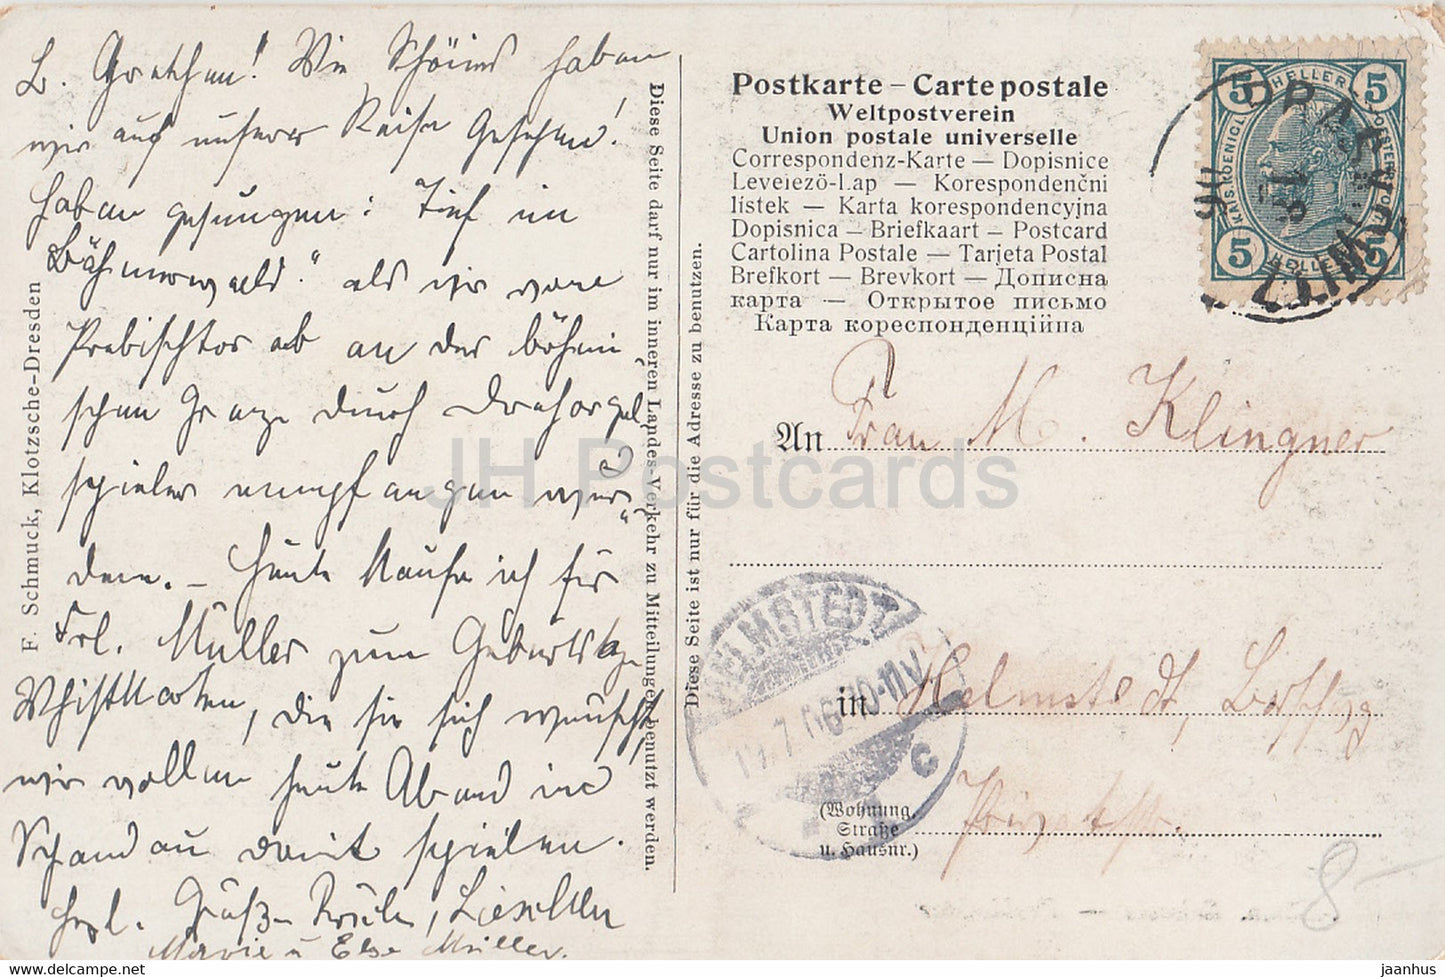 Sachs Bohm - Schweiz - Prebischtor - alte Postkarte - 1906 - Deutschland - gebraucht